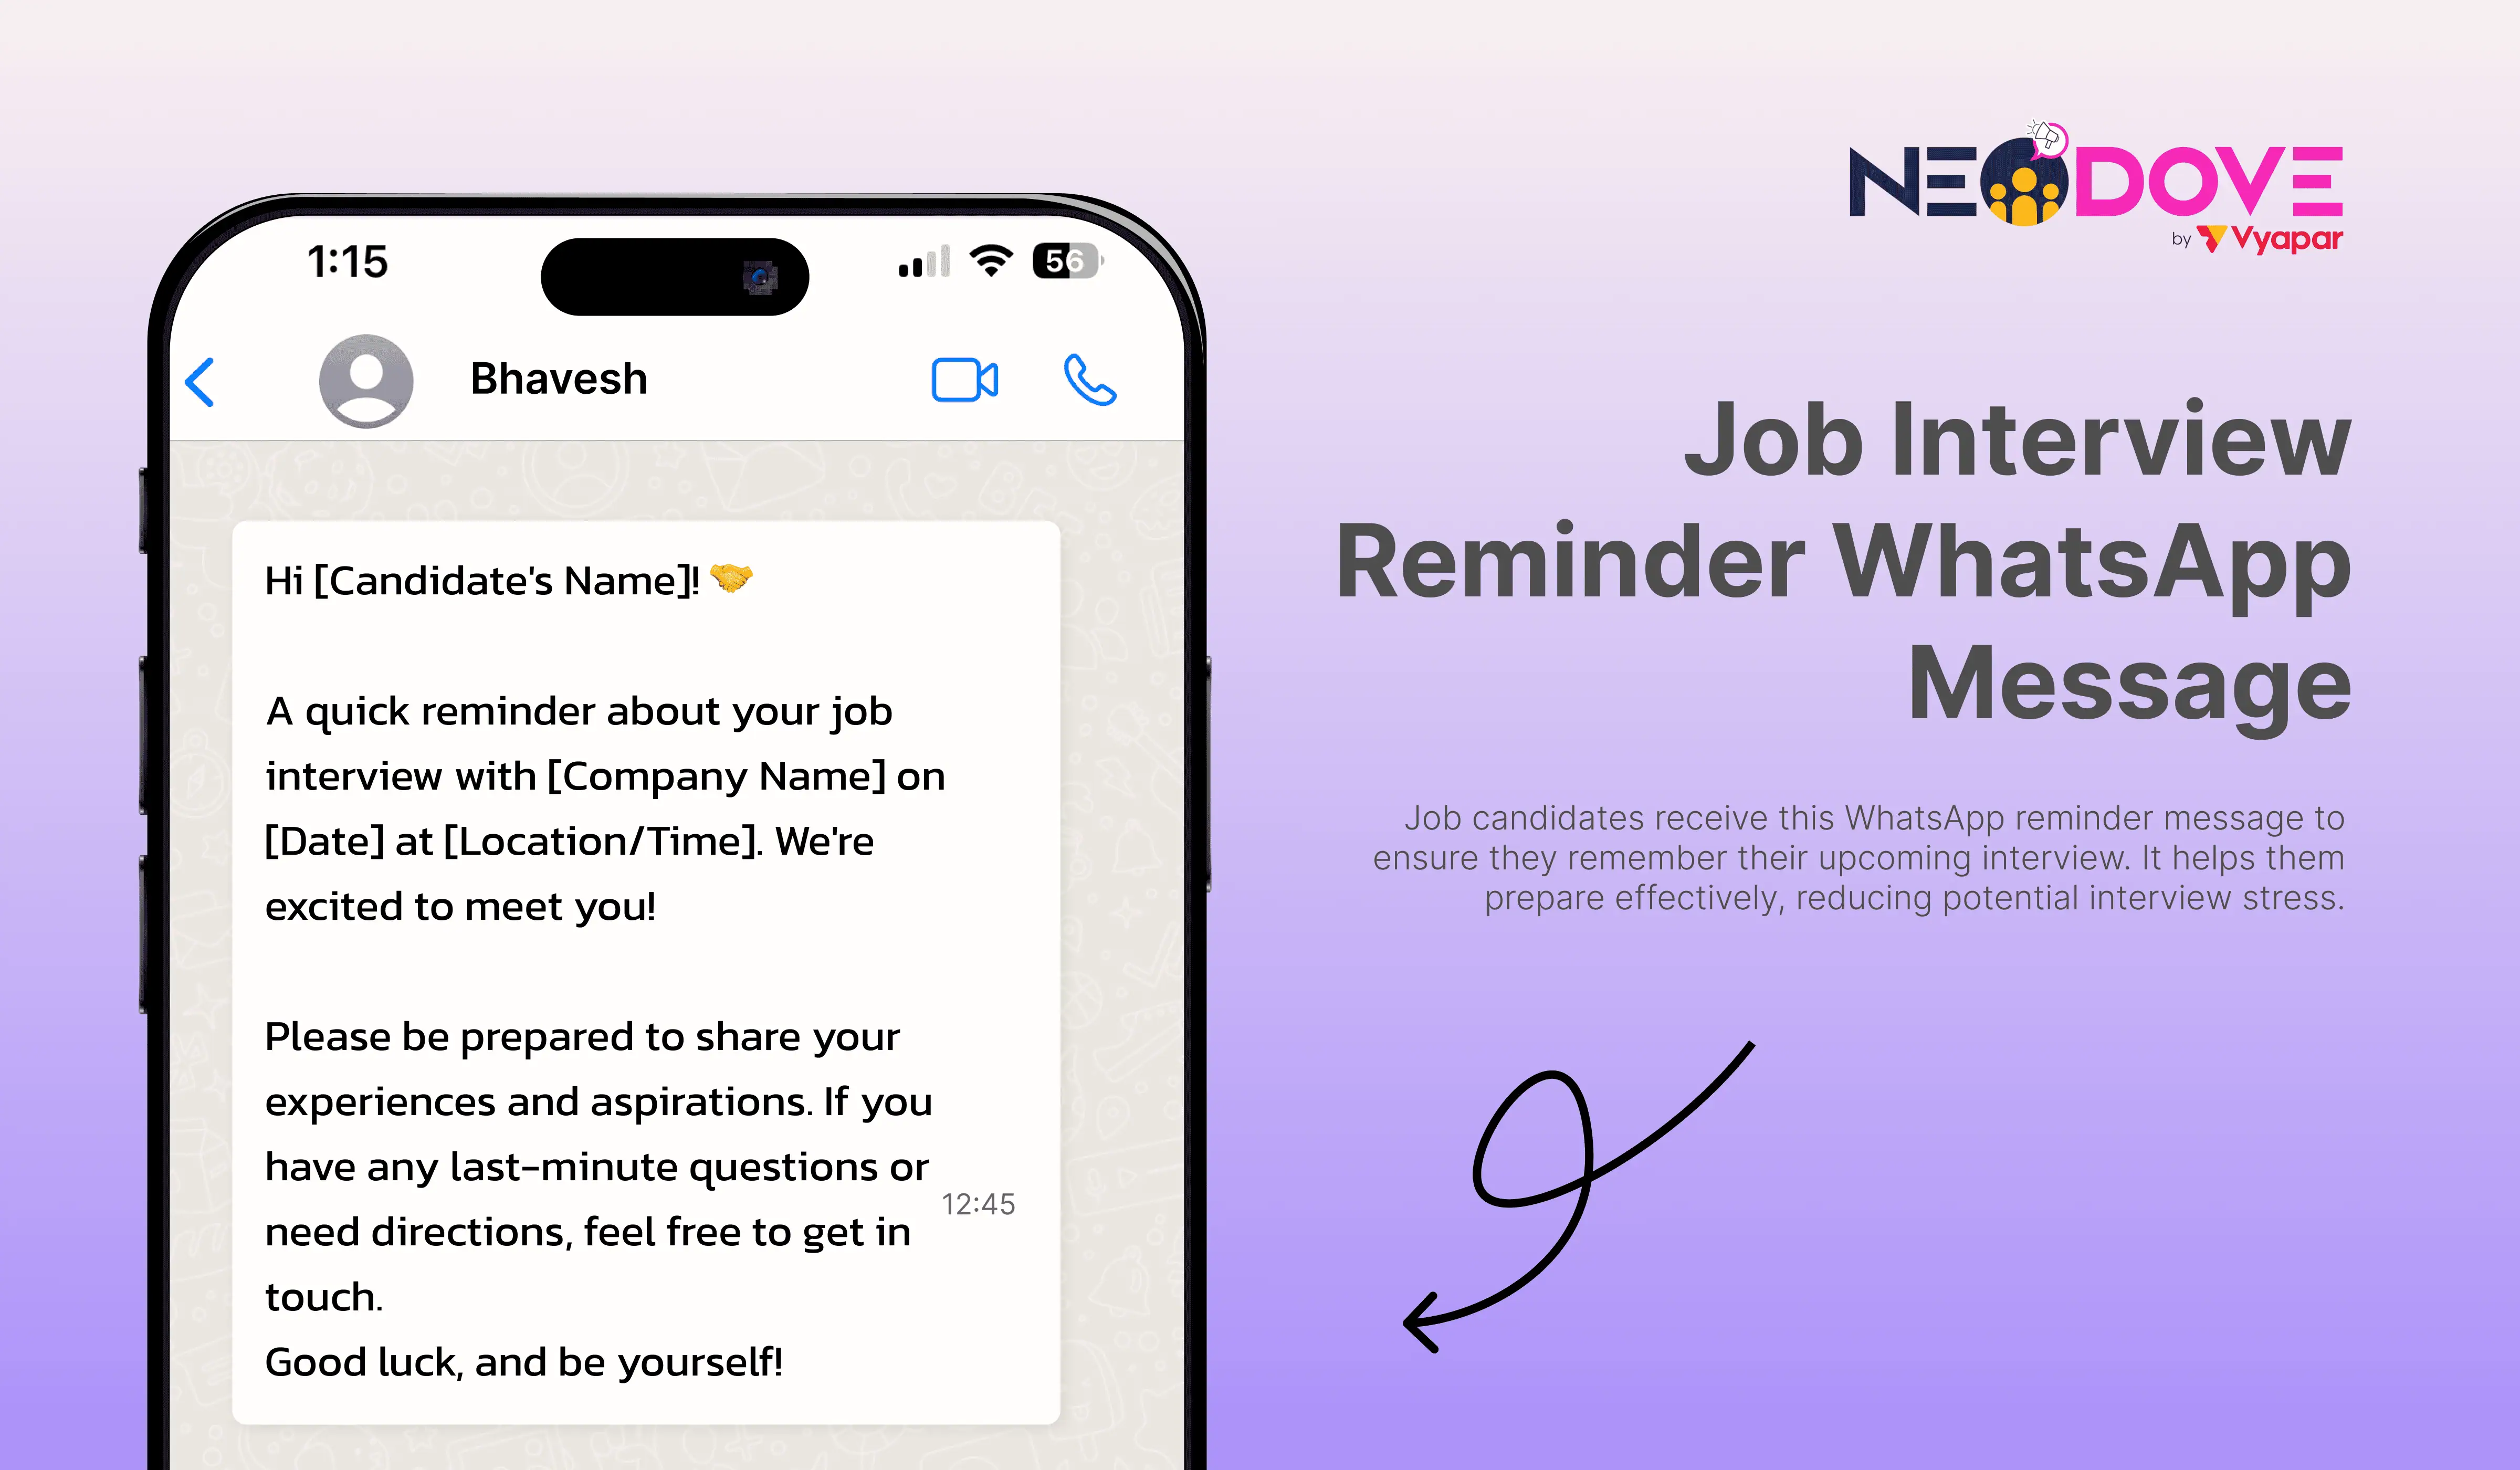 Job Interview Reminder WhatsApp Message - NeoDove 